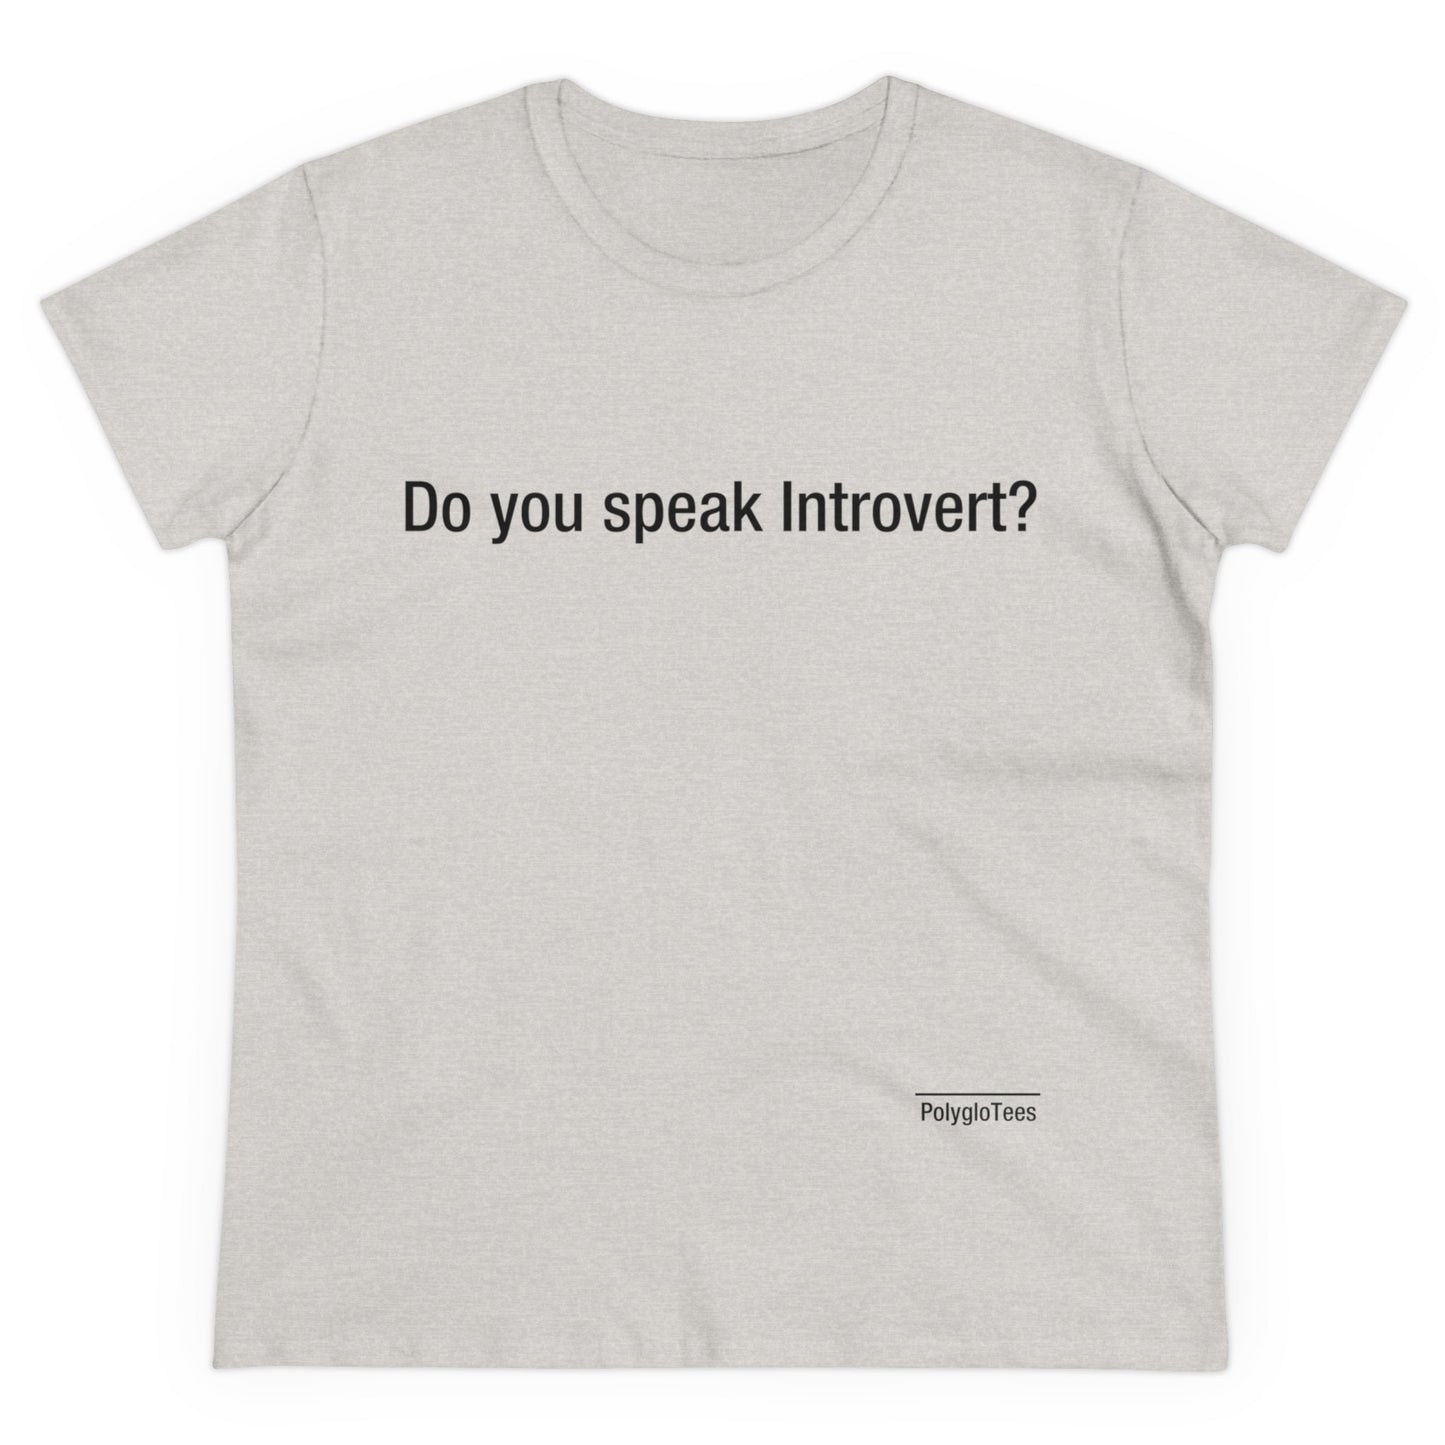 Do you speak Introvert?